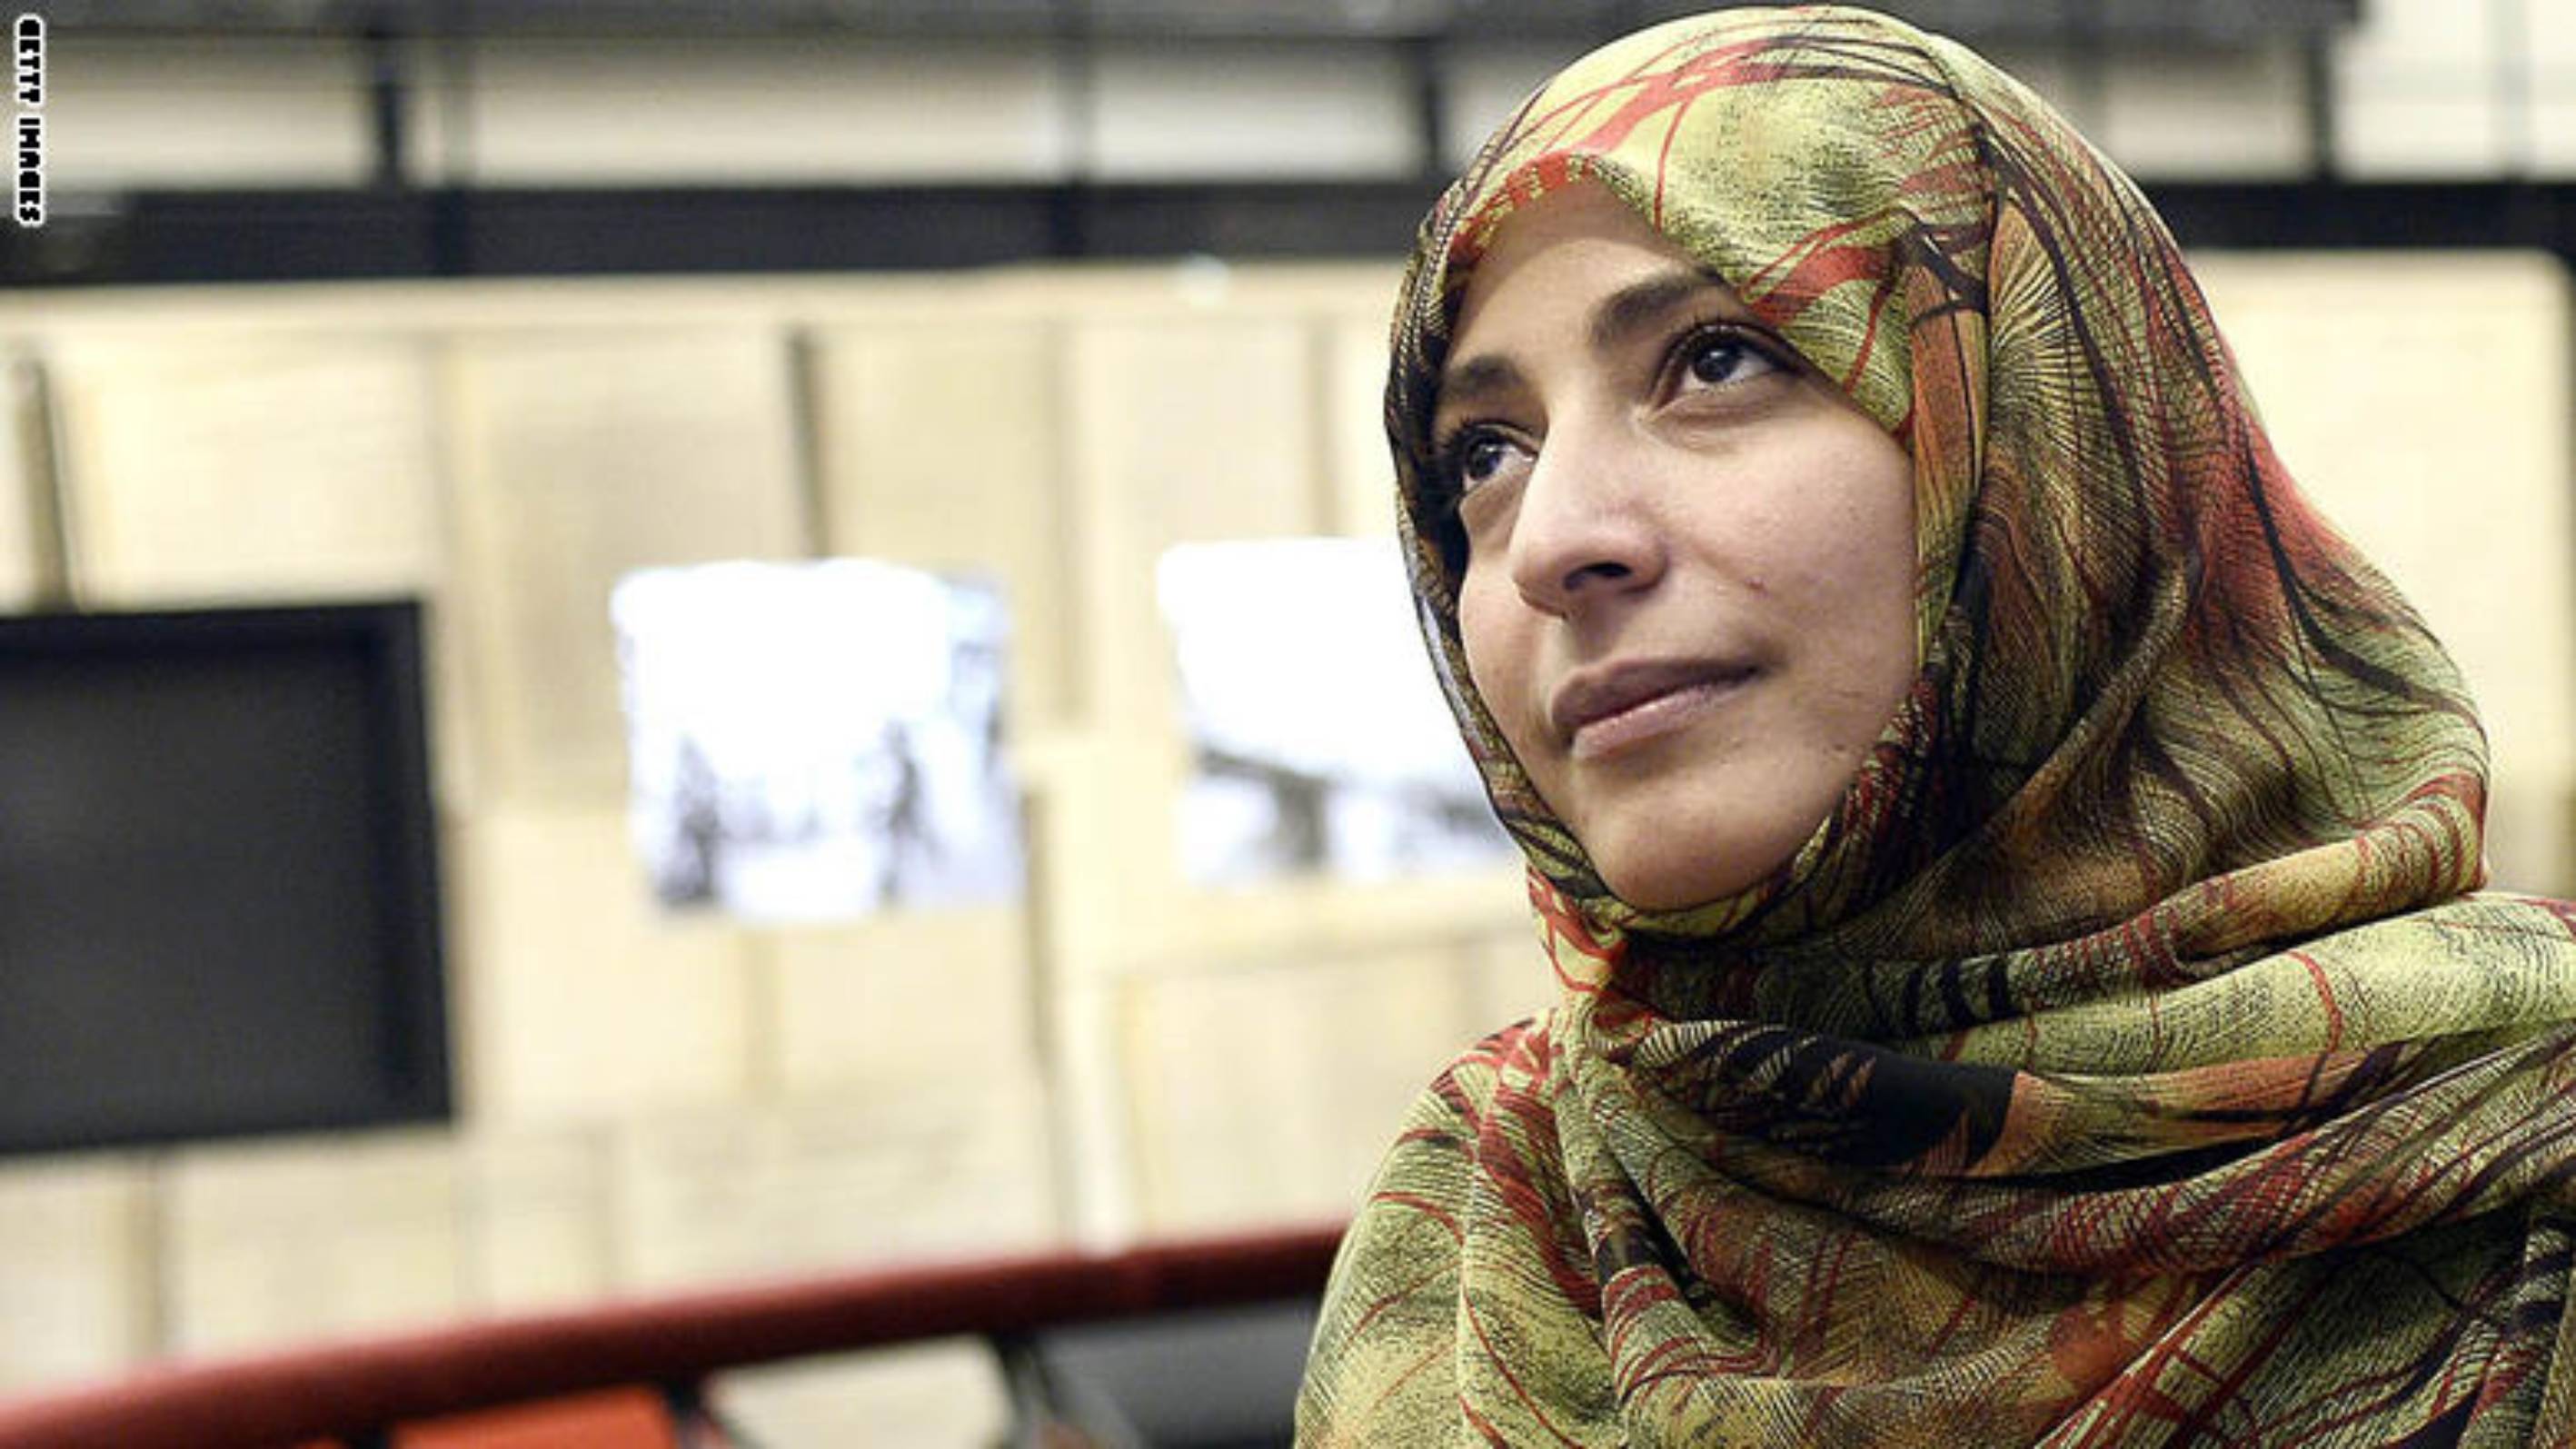 حوار الناشطة الحائزة على جائزة نوبل للسلام توكل كرمان مع شبكة CNN بالعربية الاميركية